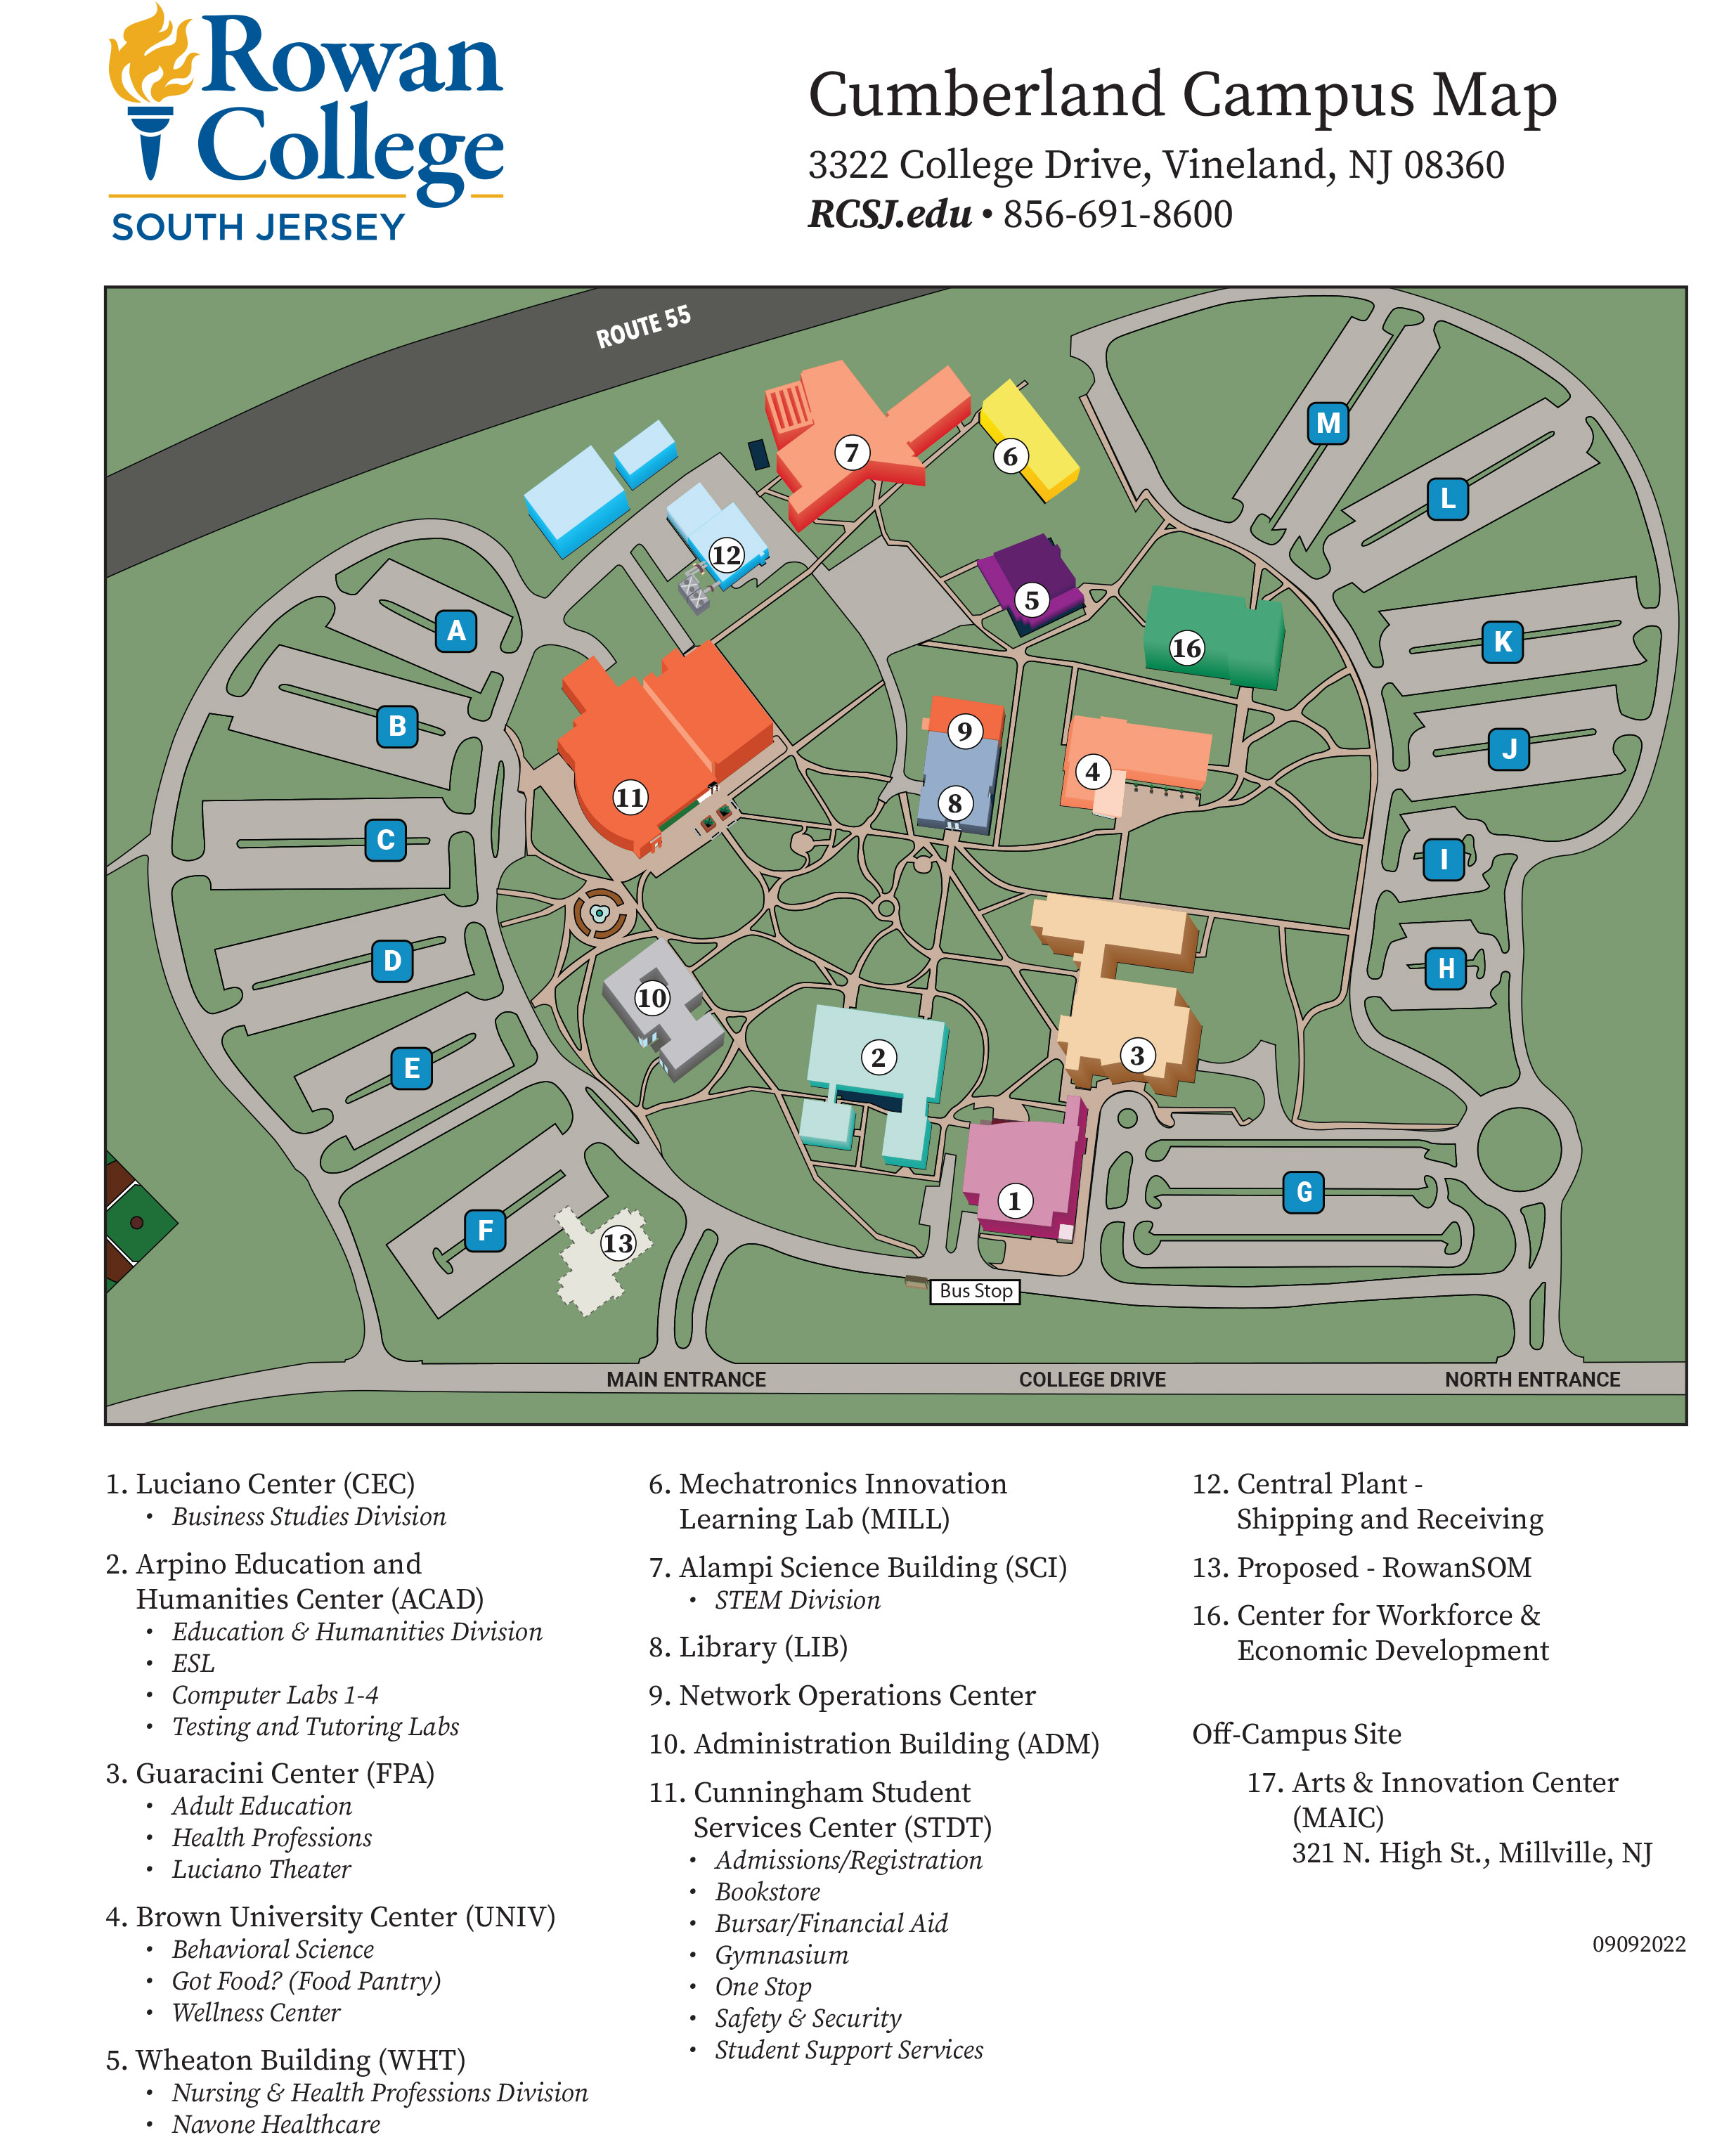 Cumberland Campus map